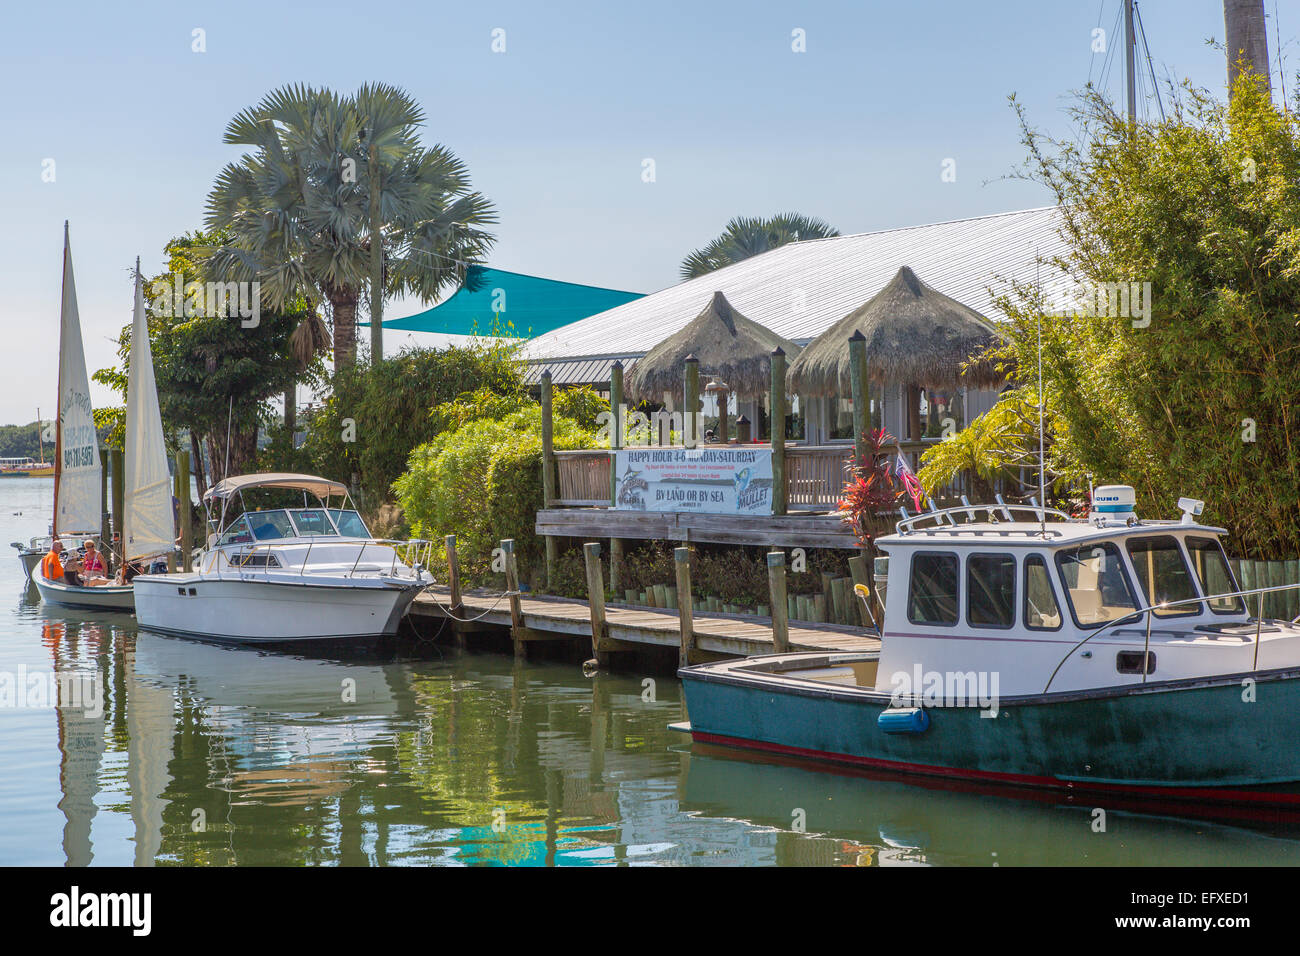 Les bateaux de pêche dans le vieux village de pêche commerciale historique de Cortez dans la baie de Sarasota en Floride Banque D'Images